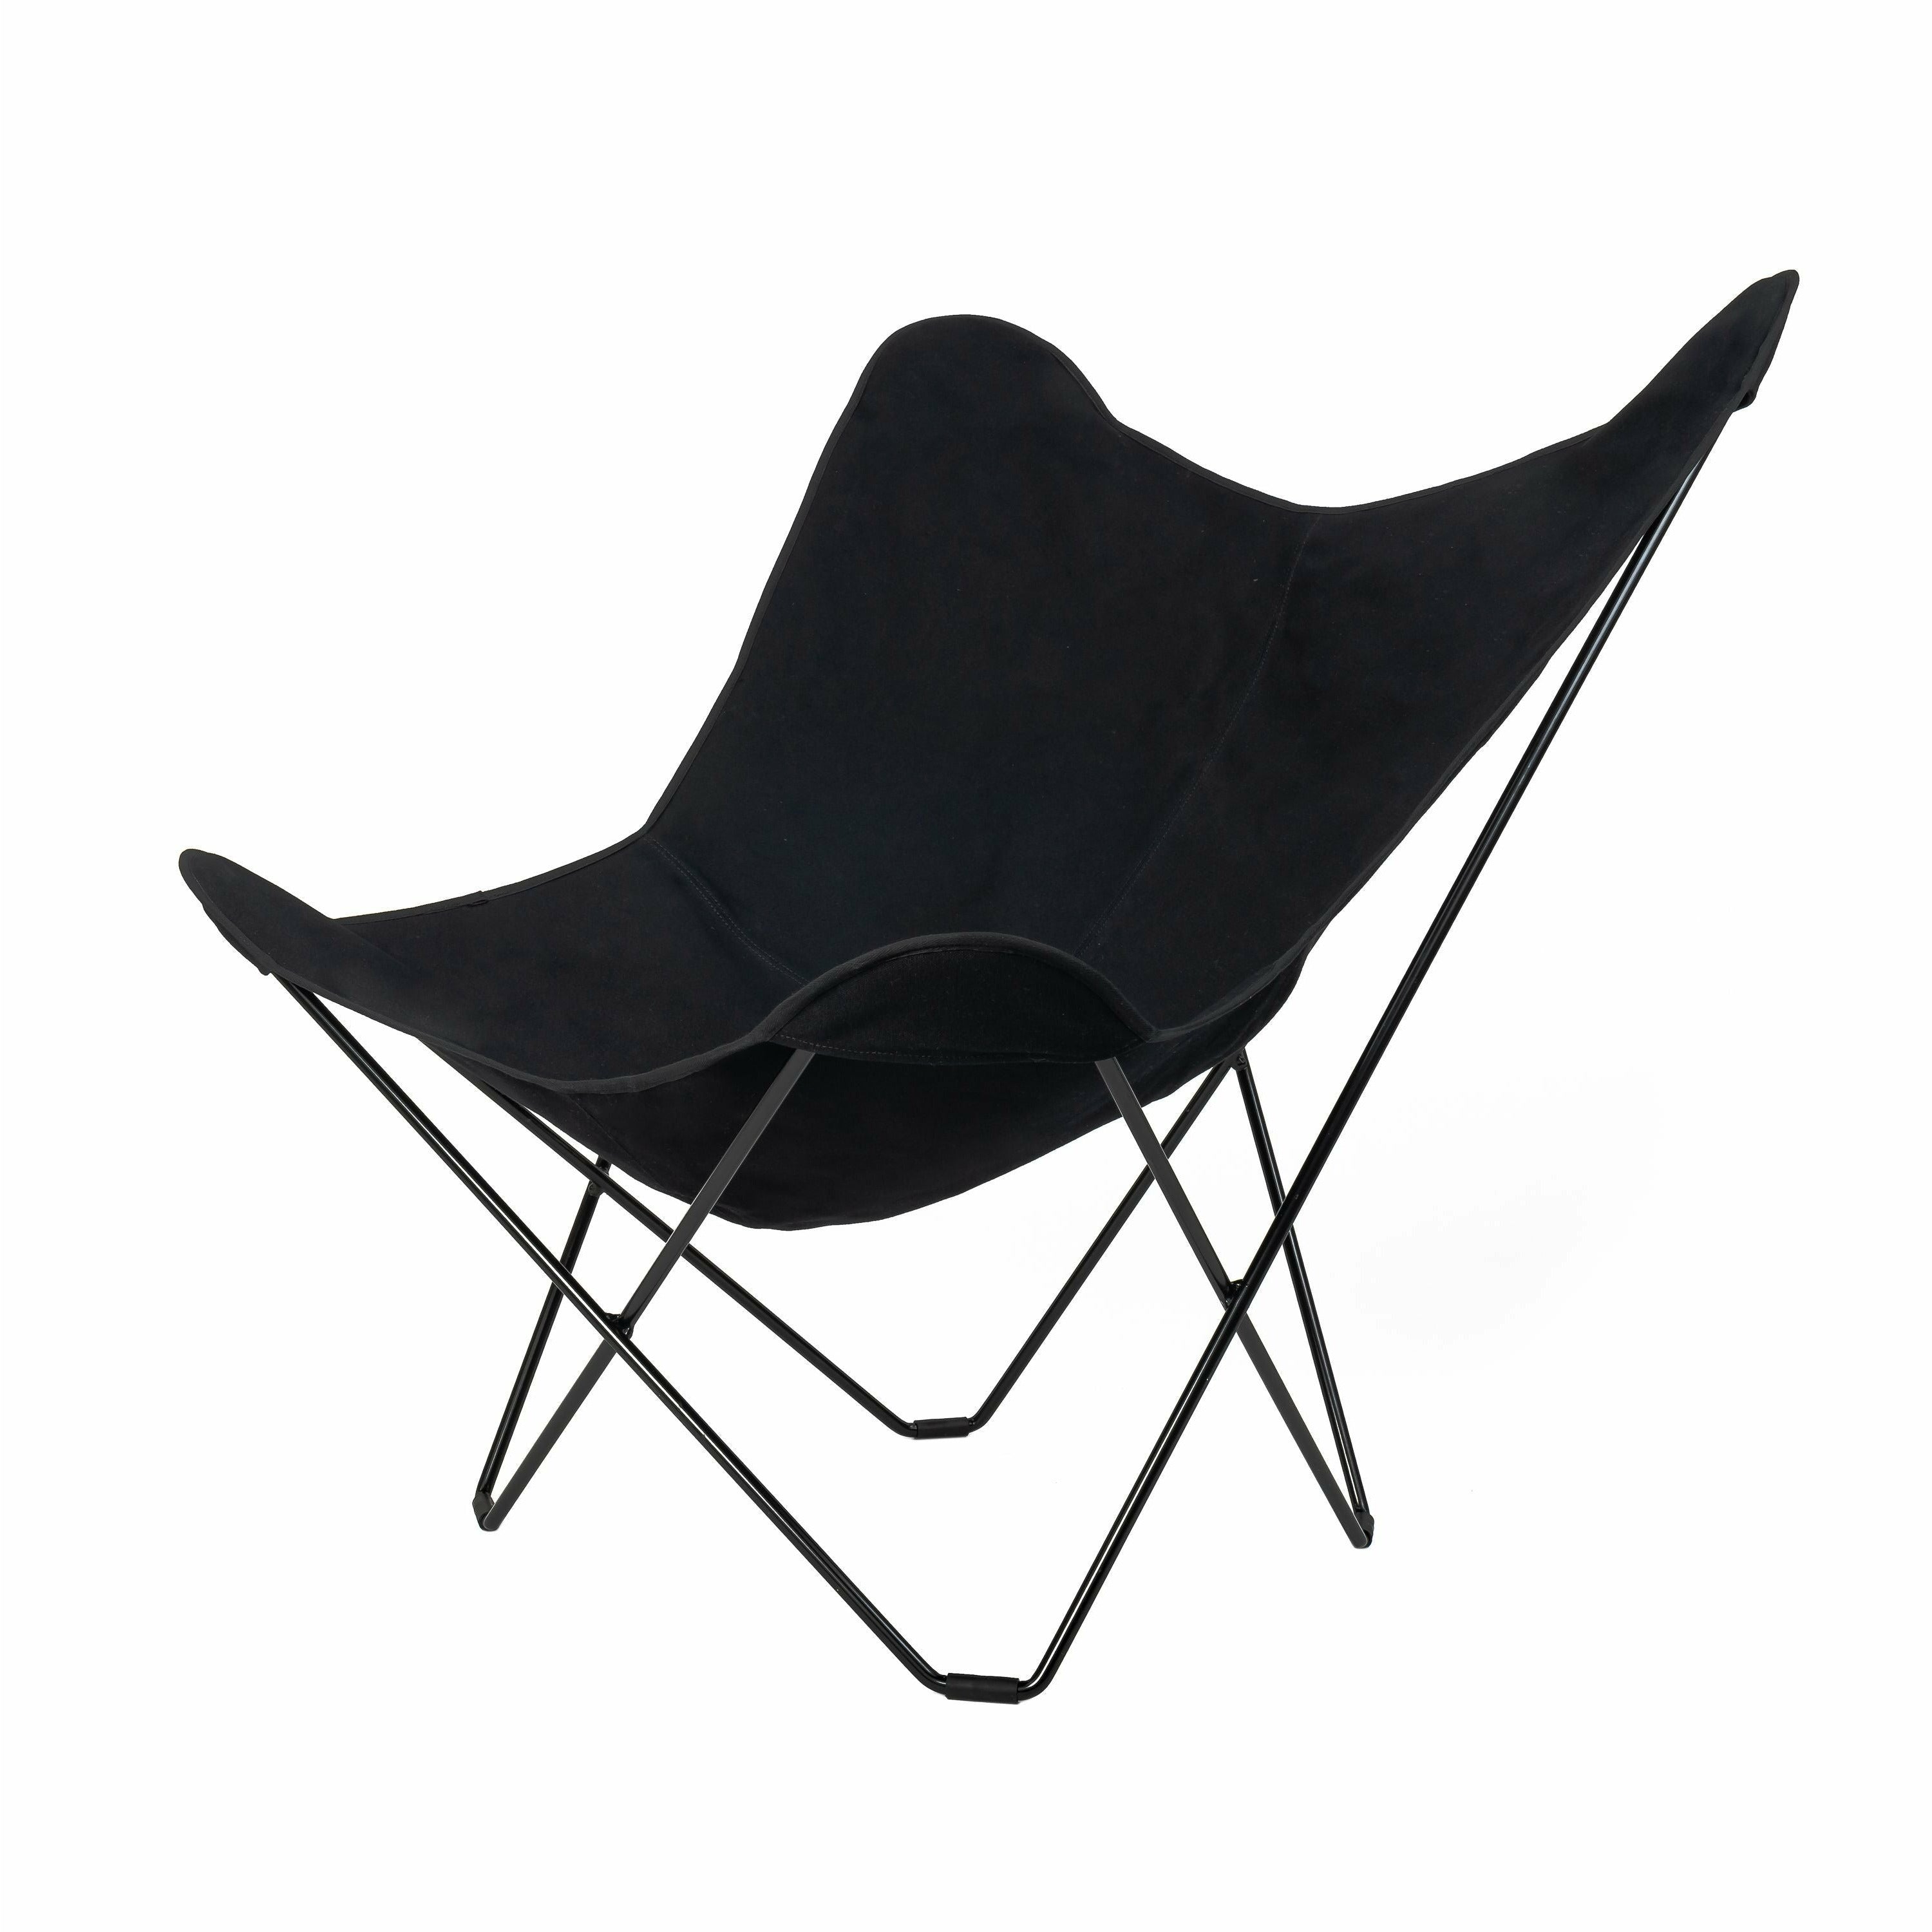 Cuero Bomull Canvas Mariposa stol, svart med svart ram